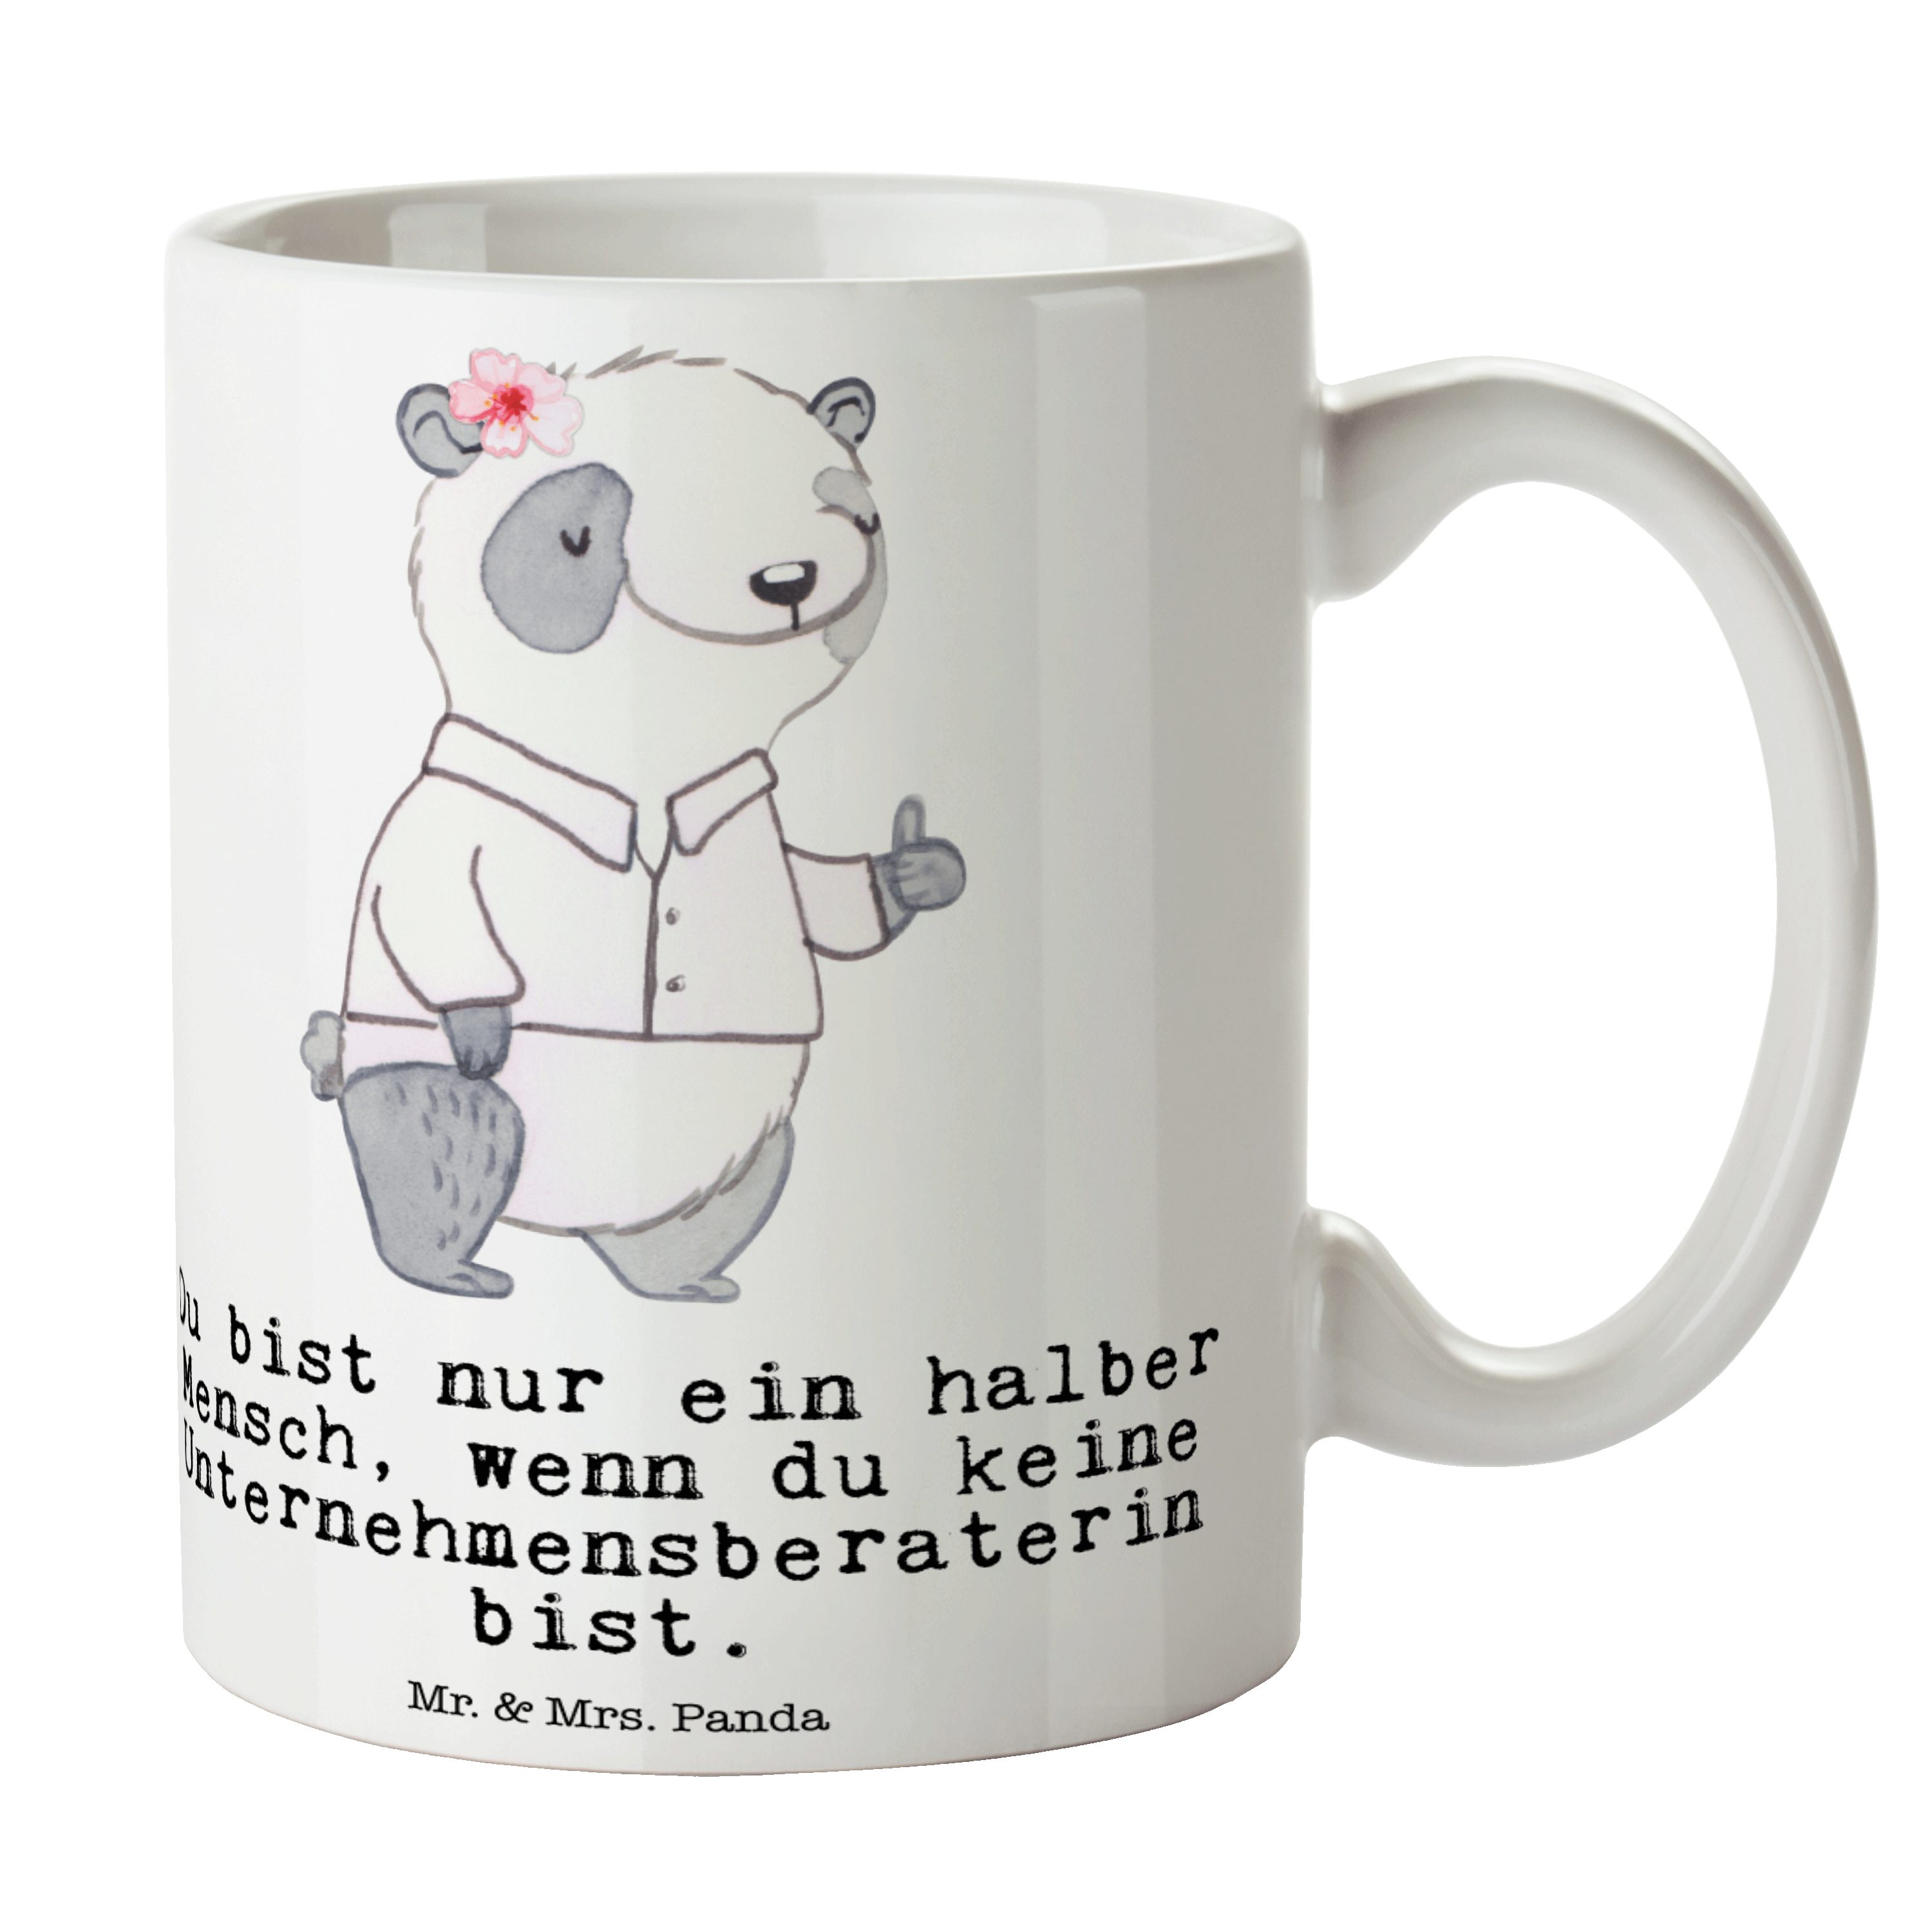 Mr. & Mrs. Panda Tasse Unternehmensberaterin mit Herz - Weiß - Geschenk, Geschenk Tasse, Tee, Keramik